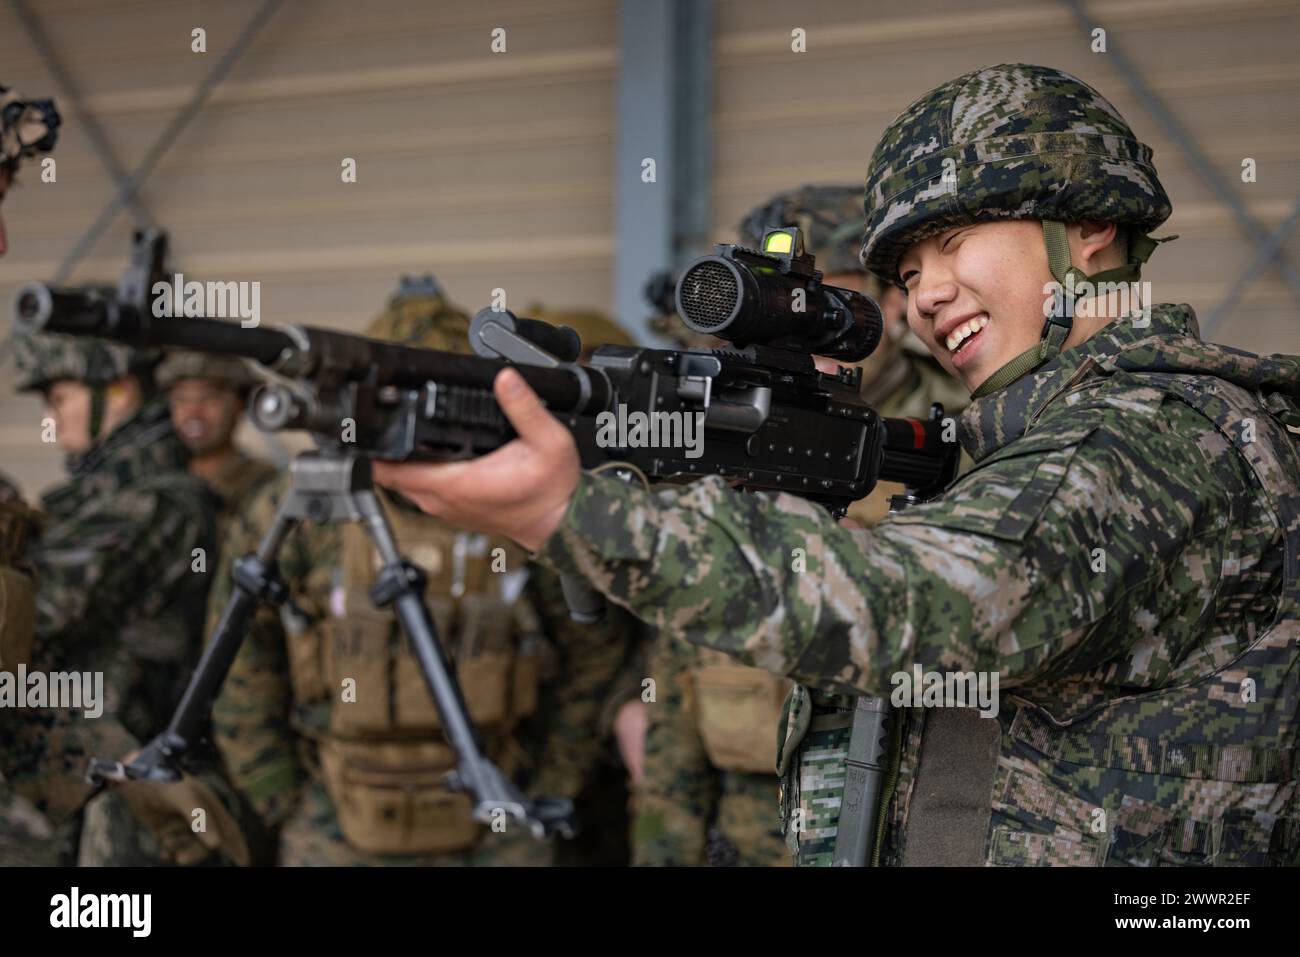 Eine Marine der Republik Korea setzt ein M240B-Maschinengewehr während der Korea Viper 24,1 in Camp Mujuk, republik Korea, am 6. Februar 2024 ein. Das Live-Fire-Training verbessert die Kampfbereitschaft der Marines, indem es die Geschicklichkeit verbessert, Vertrauen aufgebaut und Taktiken und Strategien getestet, um Marines auf die effektive und sichere Durchführung ihrer Missionen in jeder Einsatzumgebung vorzubereiten. Korea Viper demonstriert in seiner ersten Version die Fähigkeit des ROK-US Marine Corps, in der Region als einzigartige, vereinte Kraft entschieden zu reagieren und gleichzeitig die Beziehungen und das Vertrauen zwischen den beiden Verbündeten zu stärken. Die Mar Stockfoto